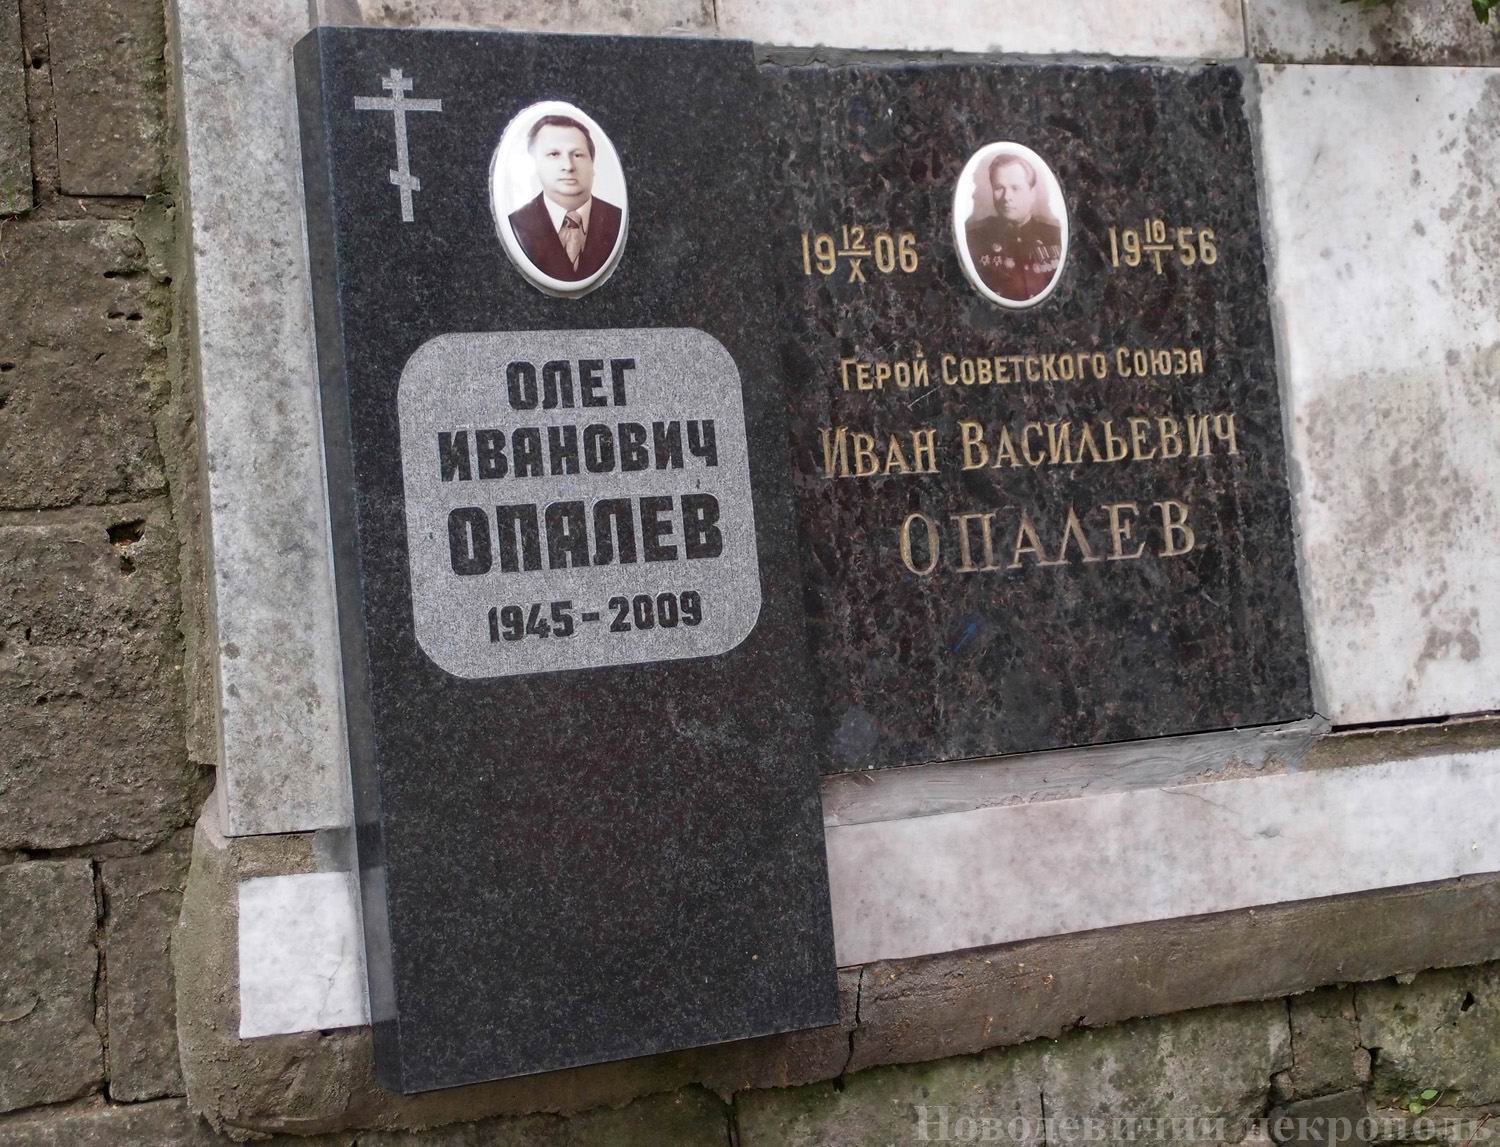 Плита на нише Опалева И.В. (1906-1956), на Новодевичьем кладбище (колумбарий [1]-1-2).